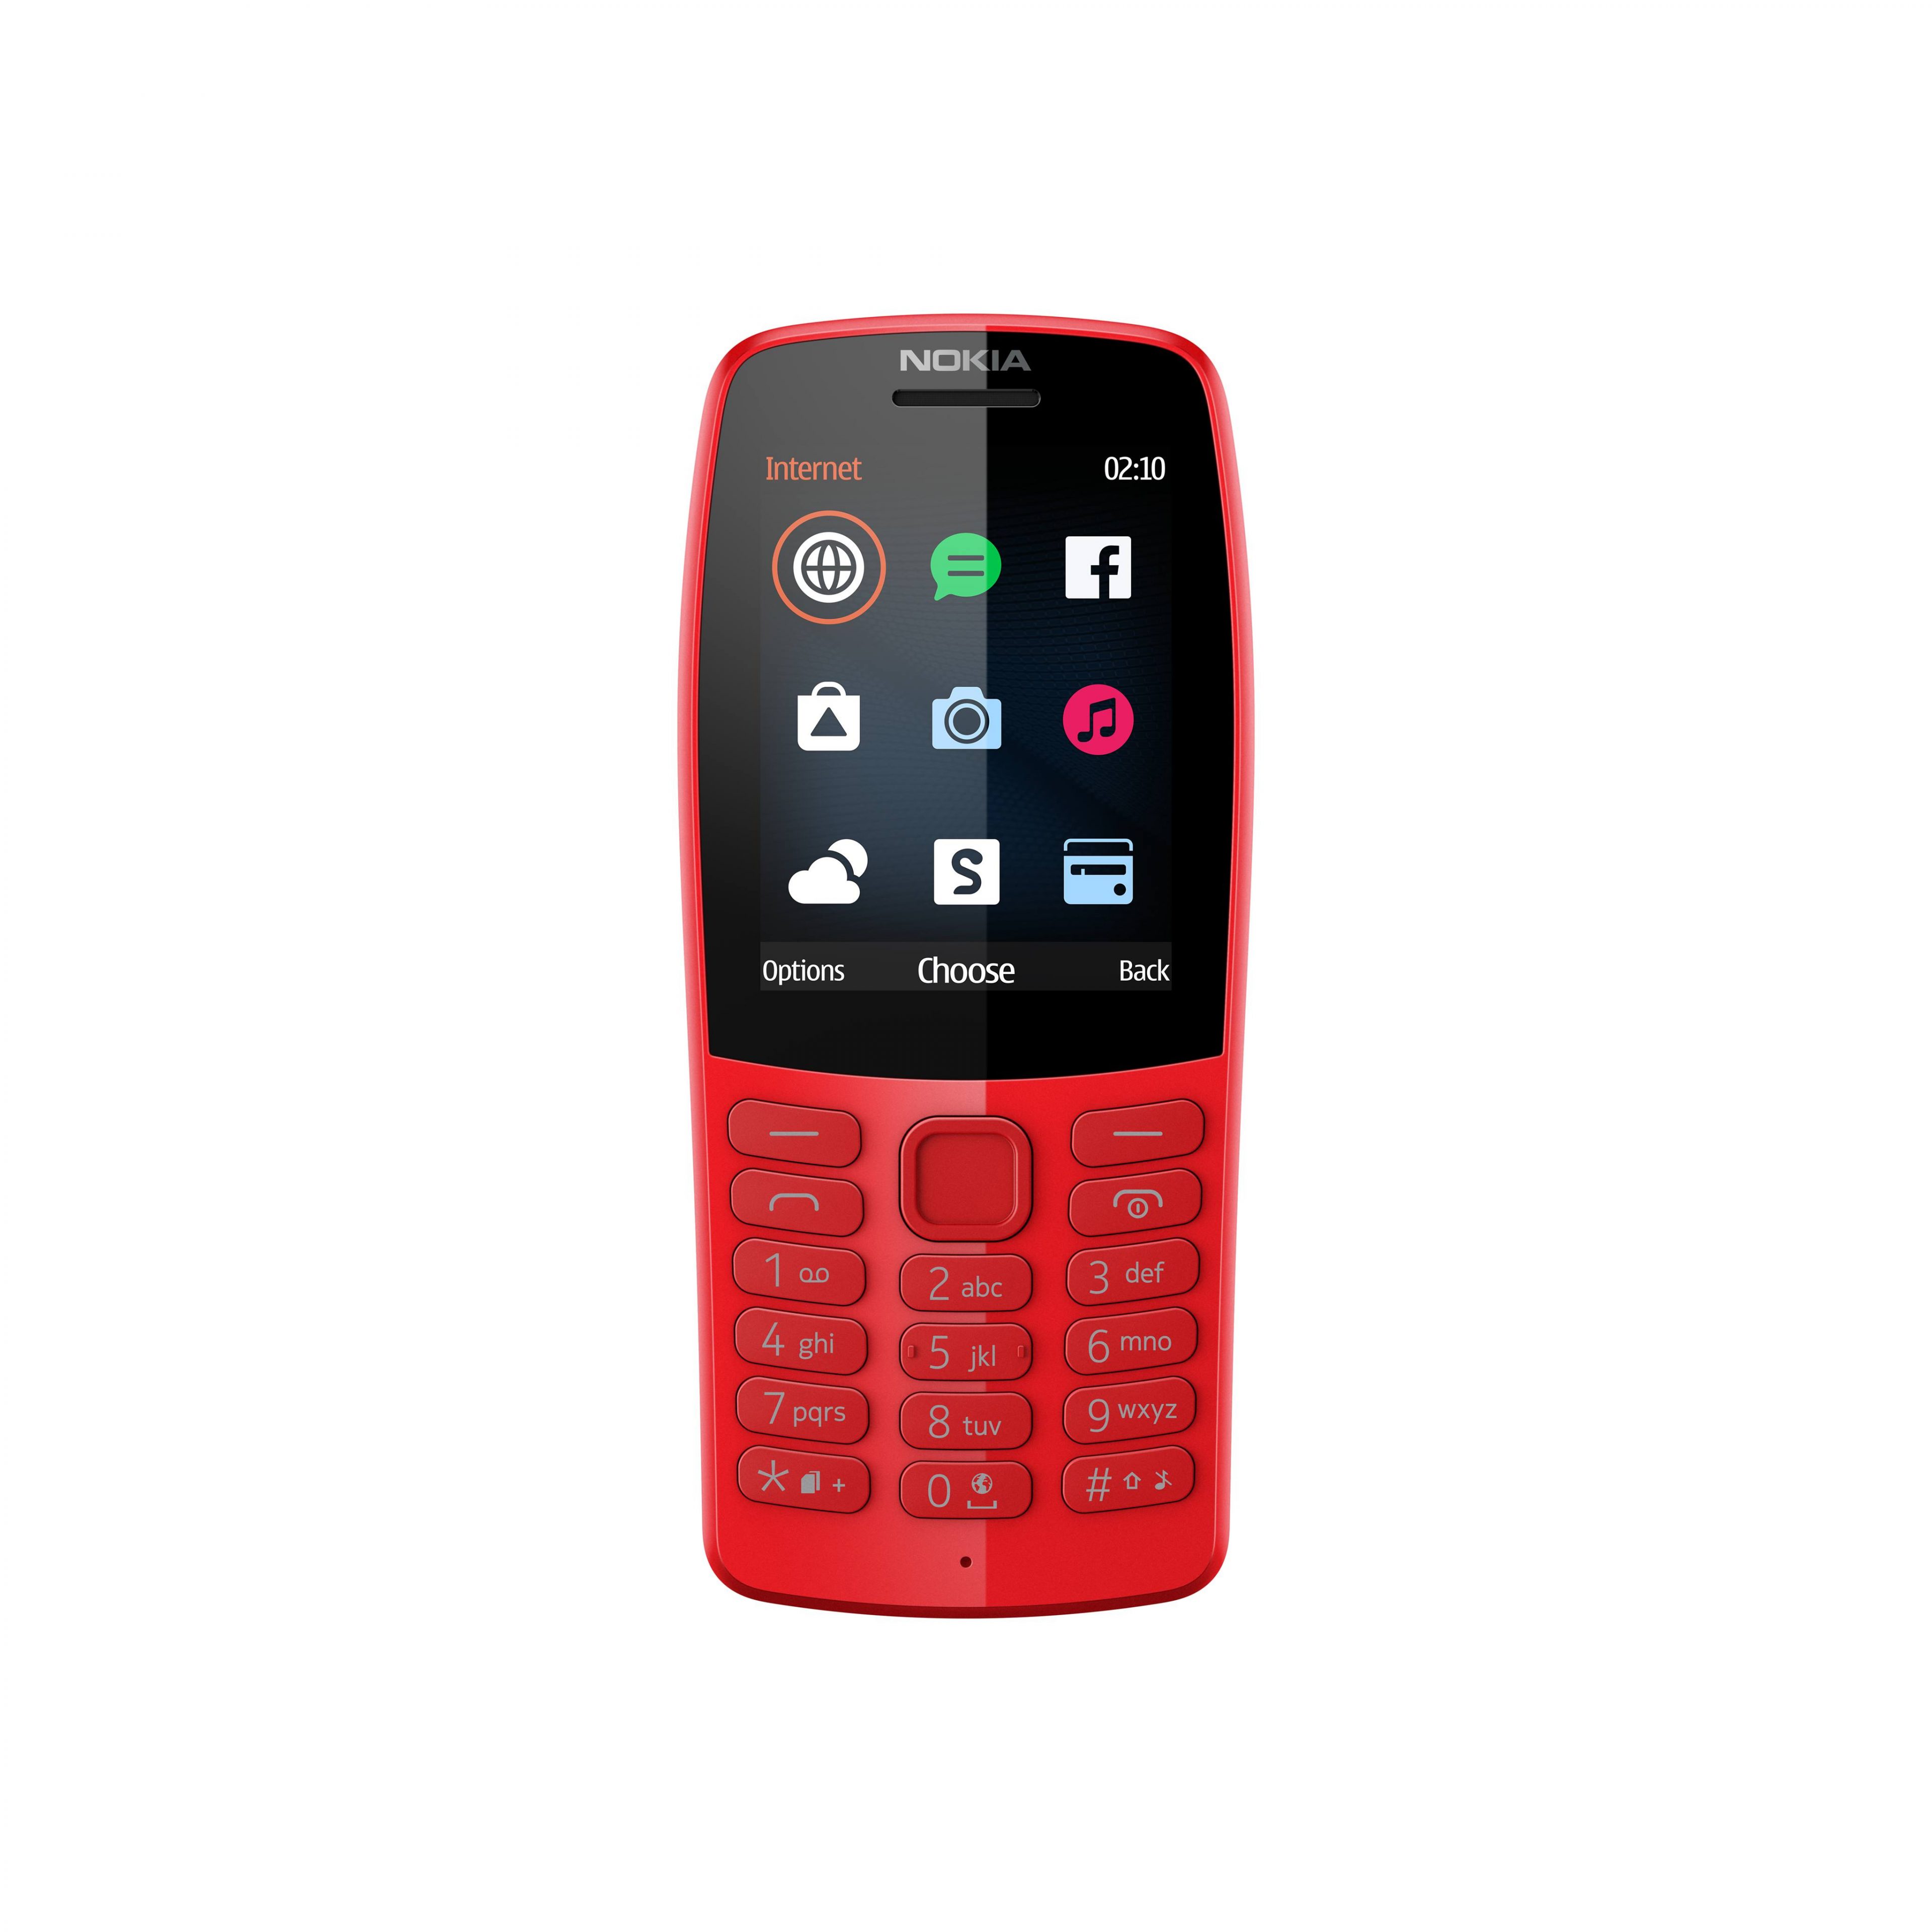 HMD Global giới thiệu Nokia 210 tại thị trường Việt Nam, pin ‘trâu’, nhiều màu sắc, giá 779 nghìn đồng